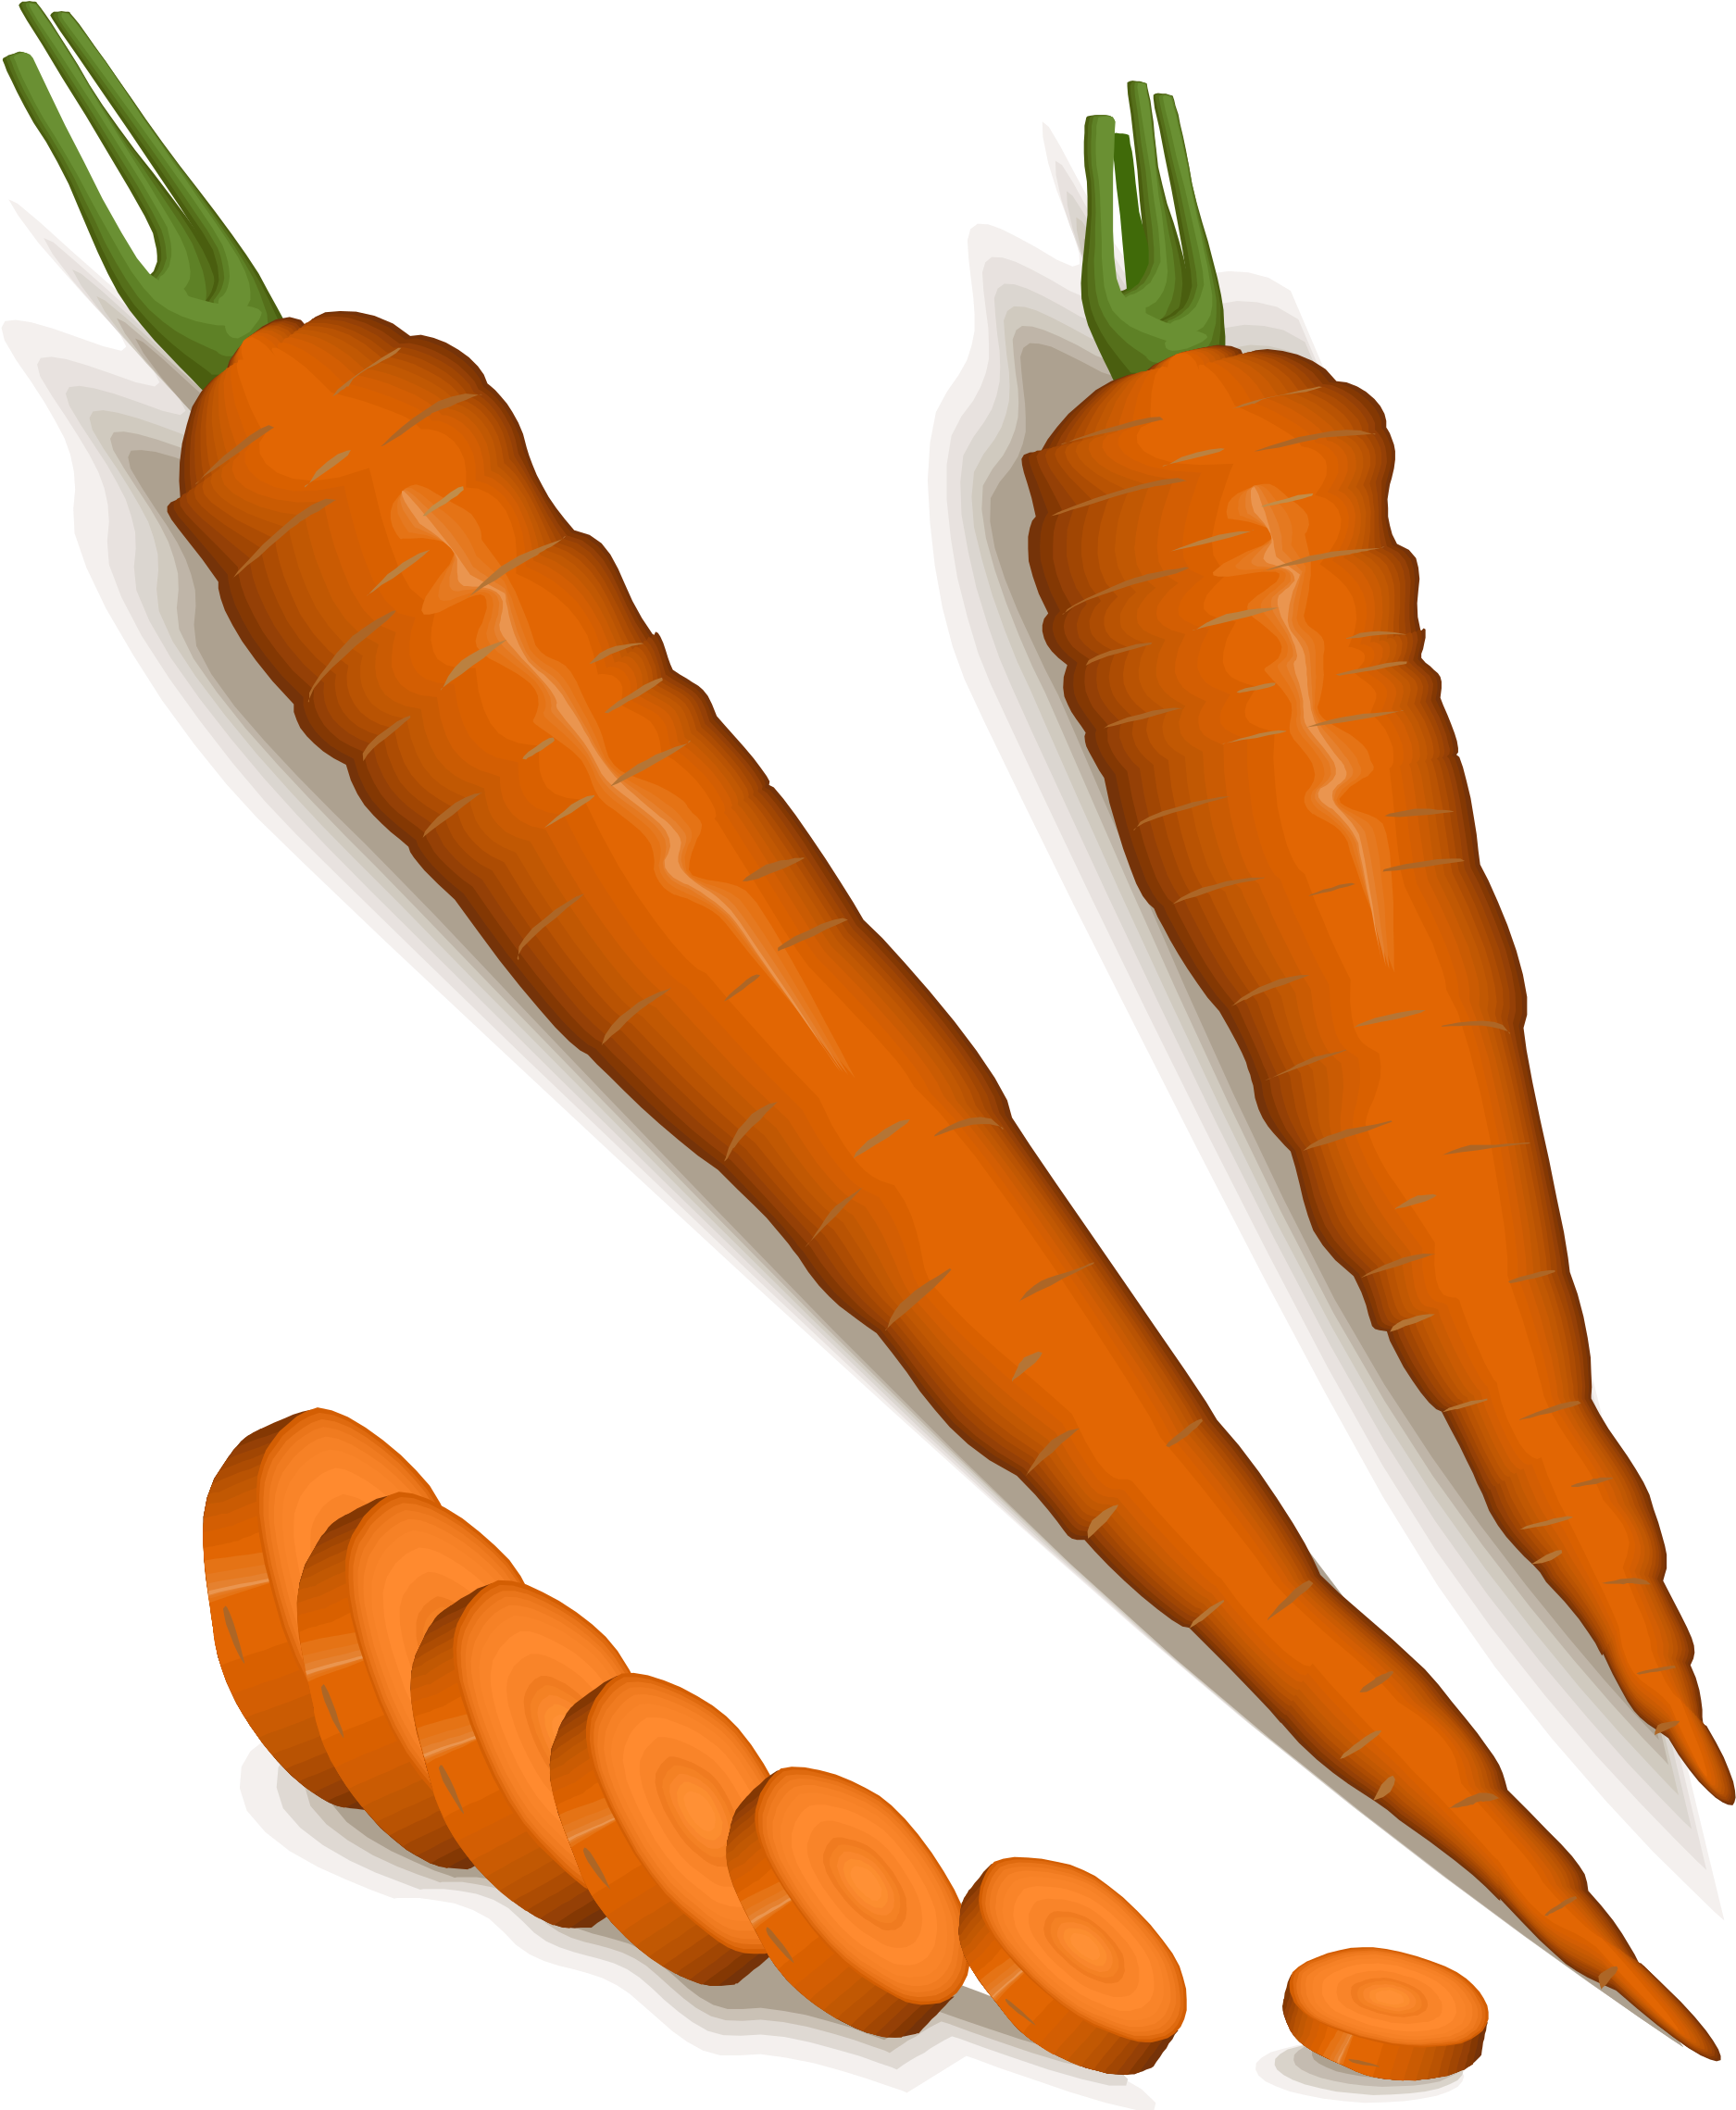 Free Photos > Public Domain Images > Orange Carrots - Carrot (2000x2400)